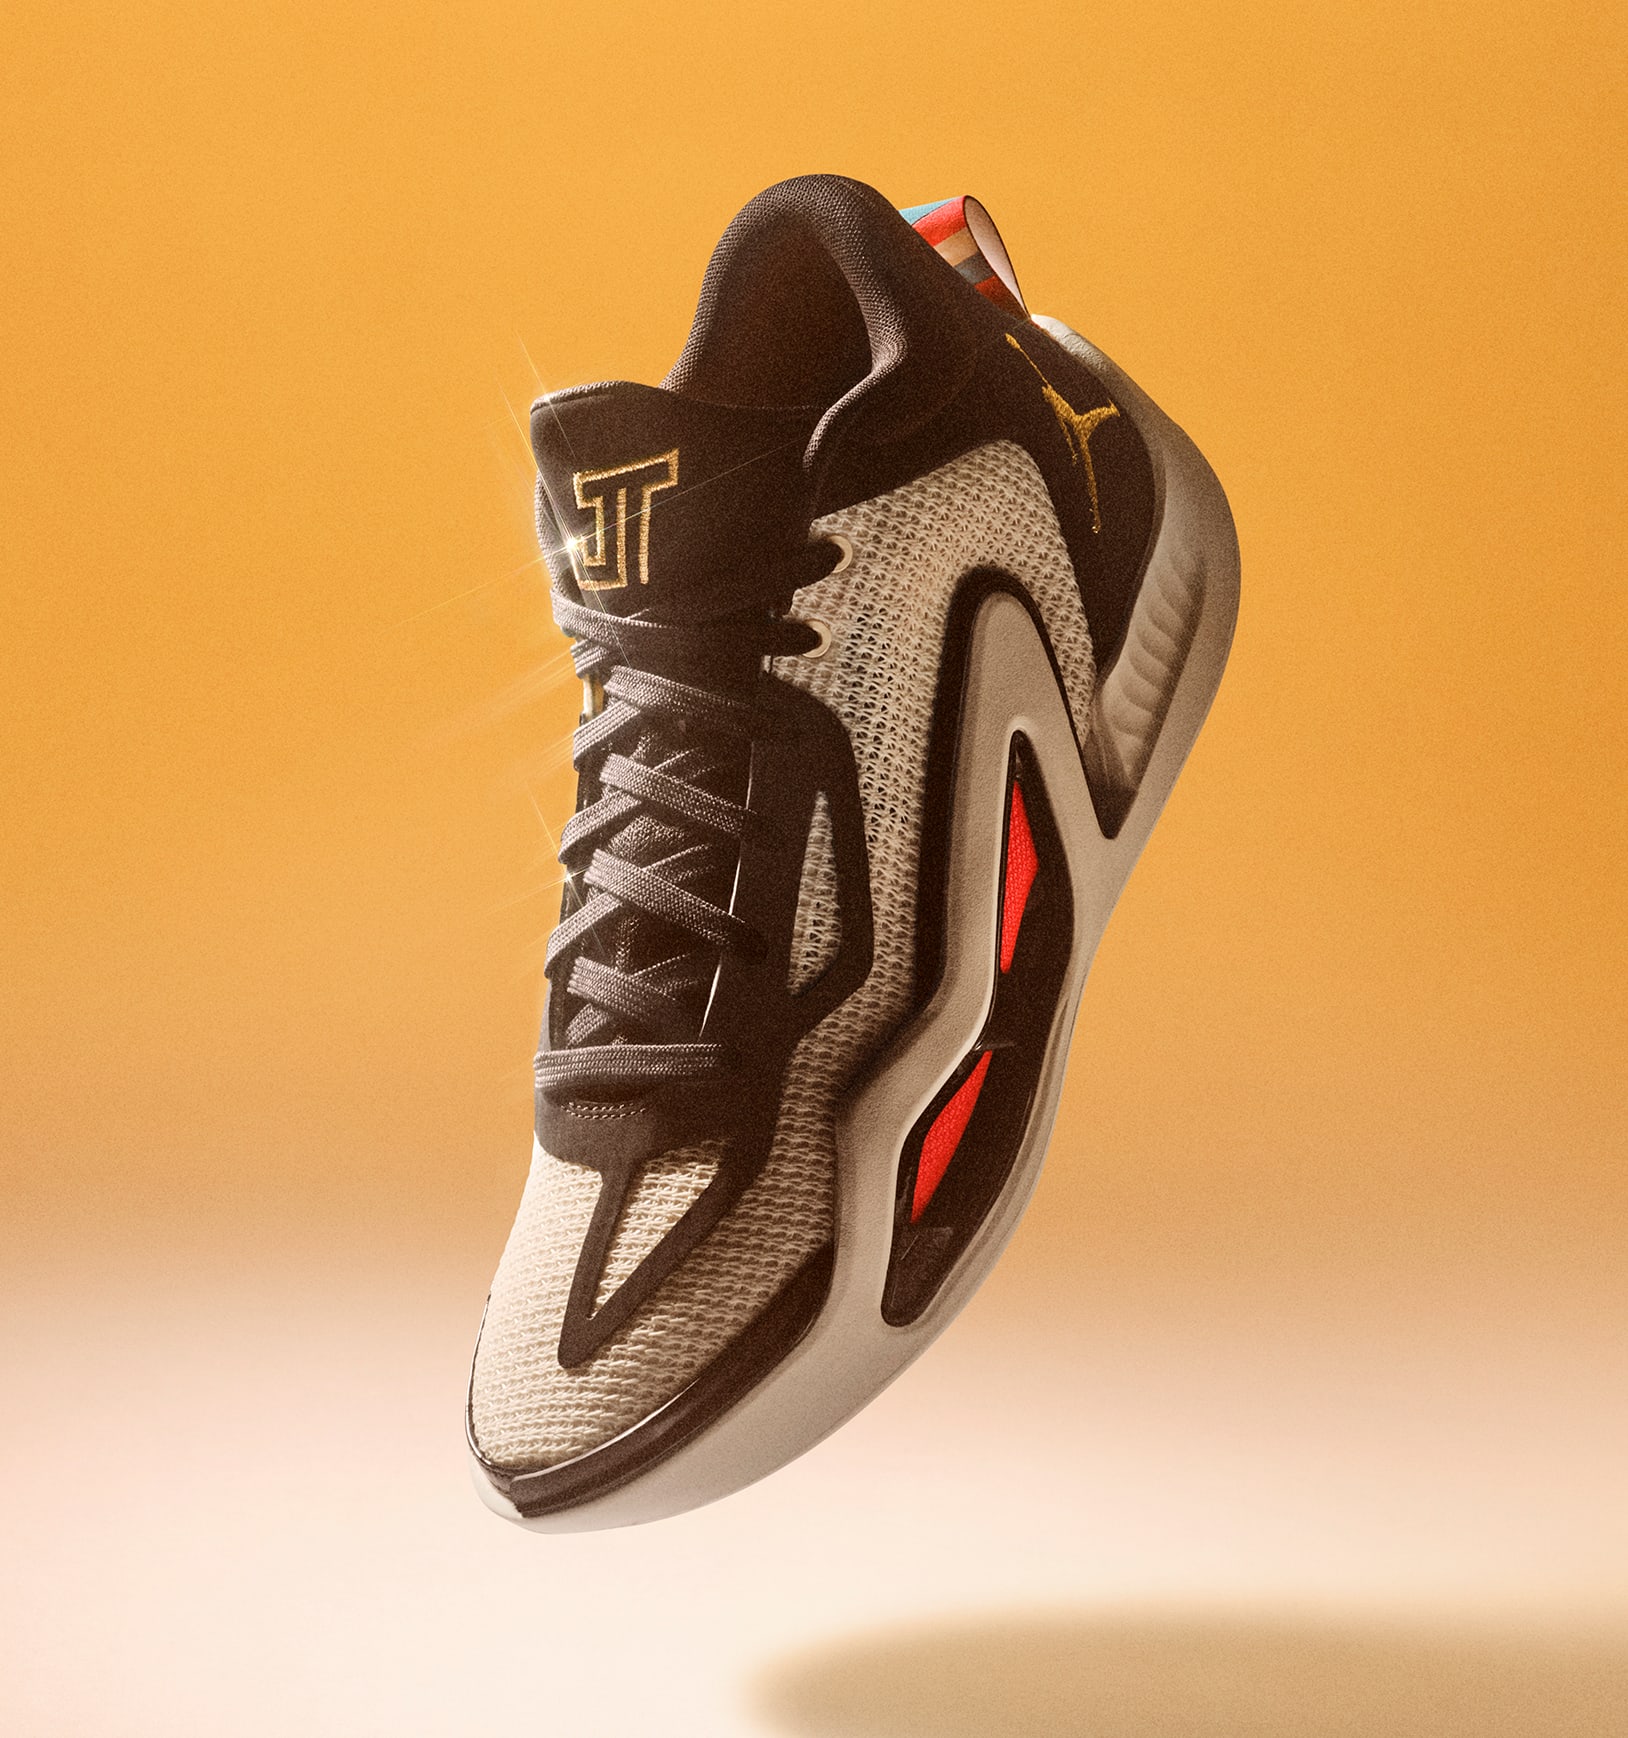 Jayson Tatum's Jordan Signature Shoe Launches in April